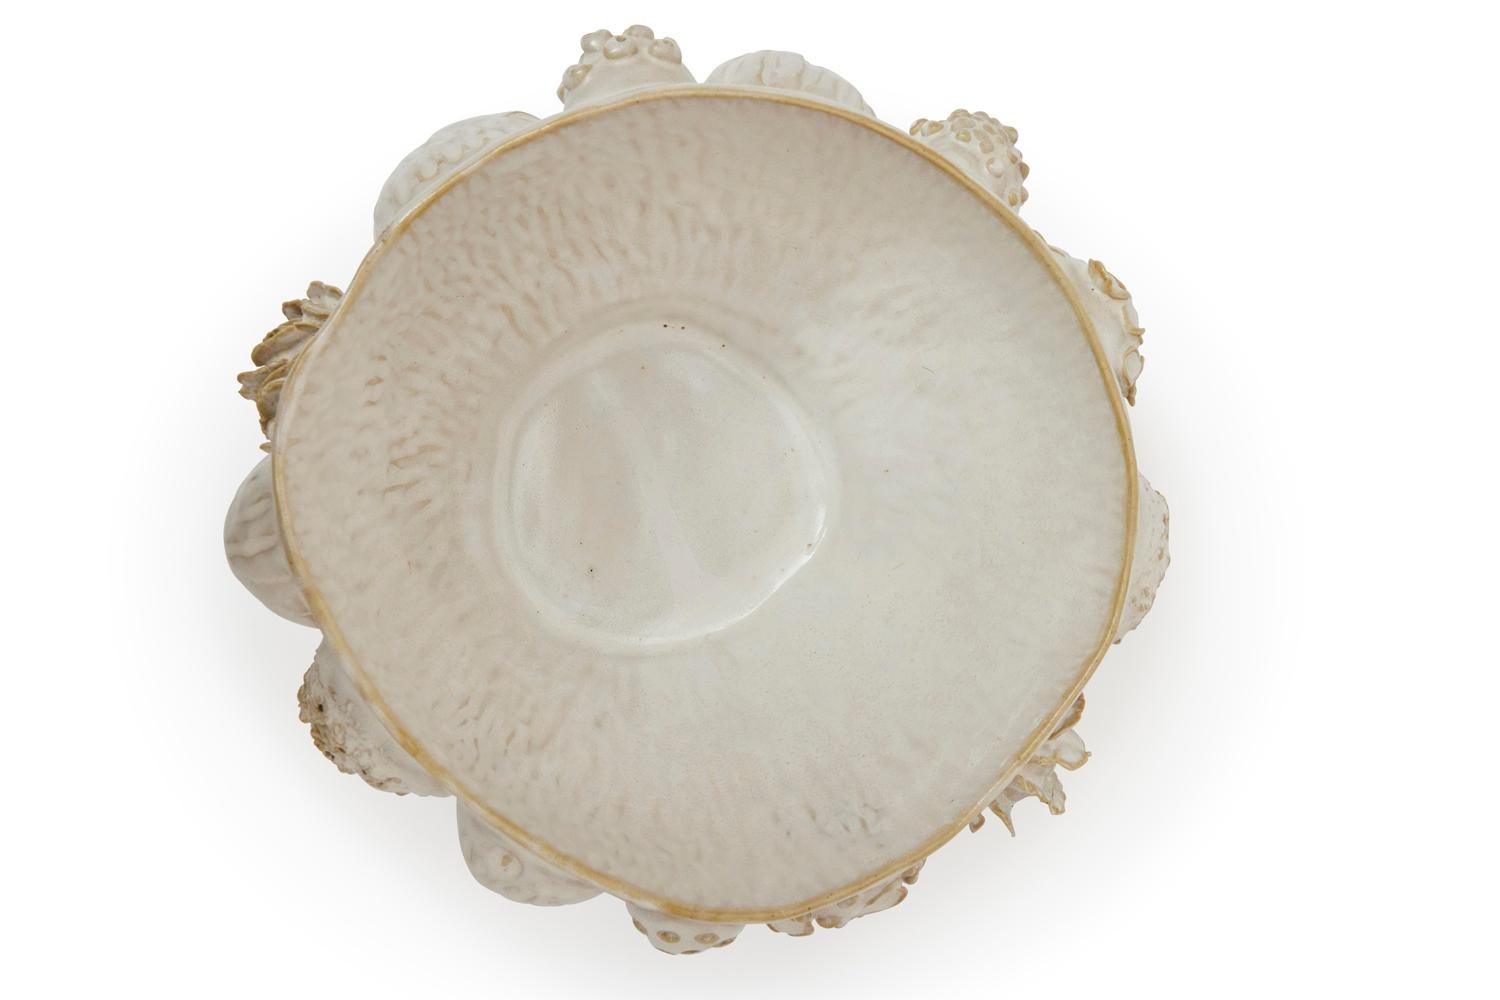 Botanica Bowl in Glazed Ceramic by Trish DeMasi For Sale 1